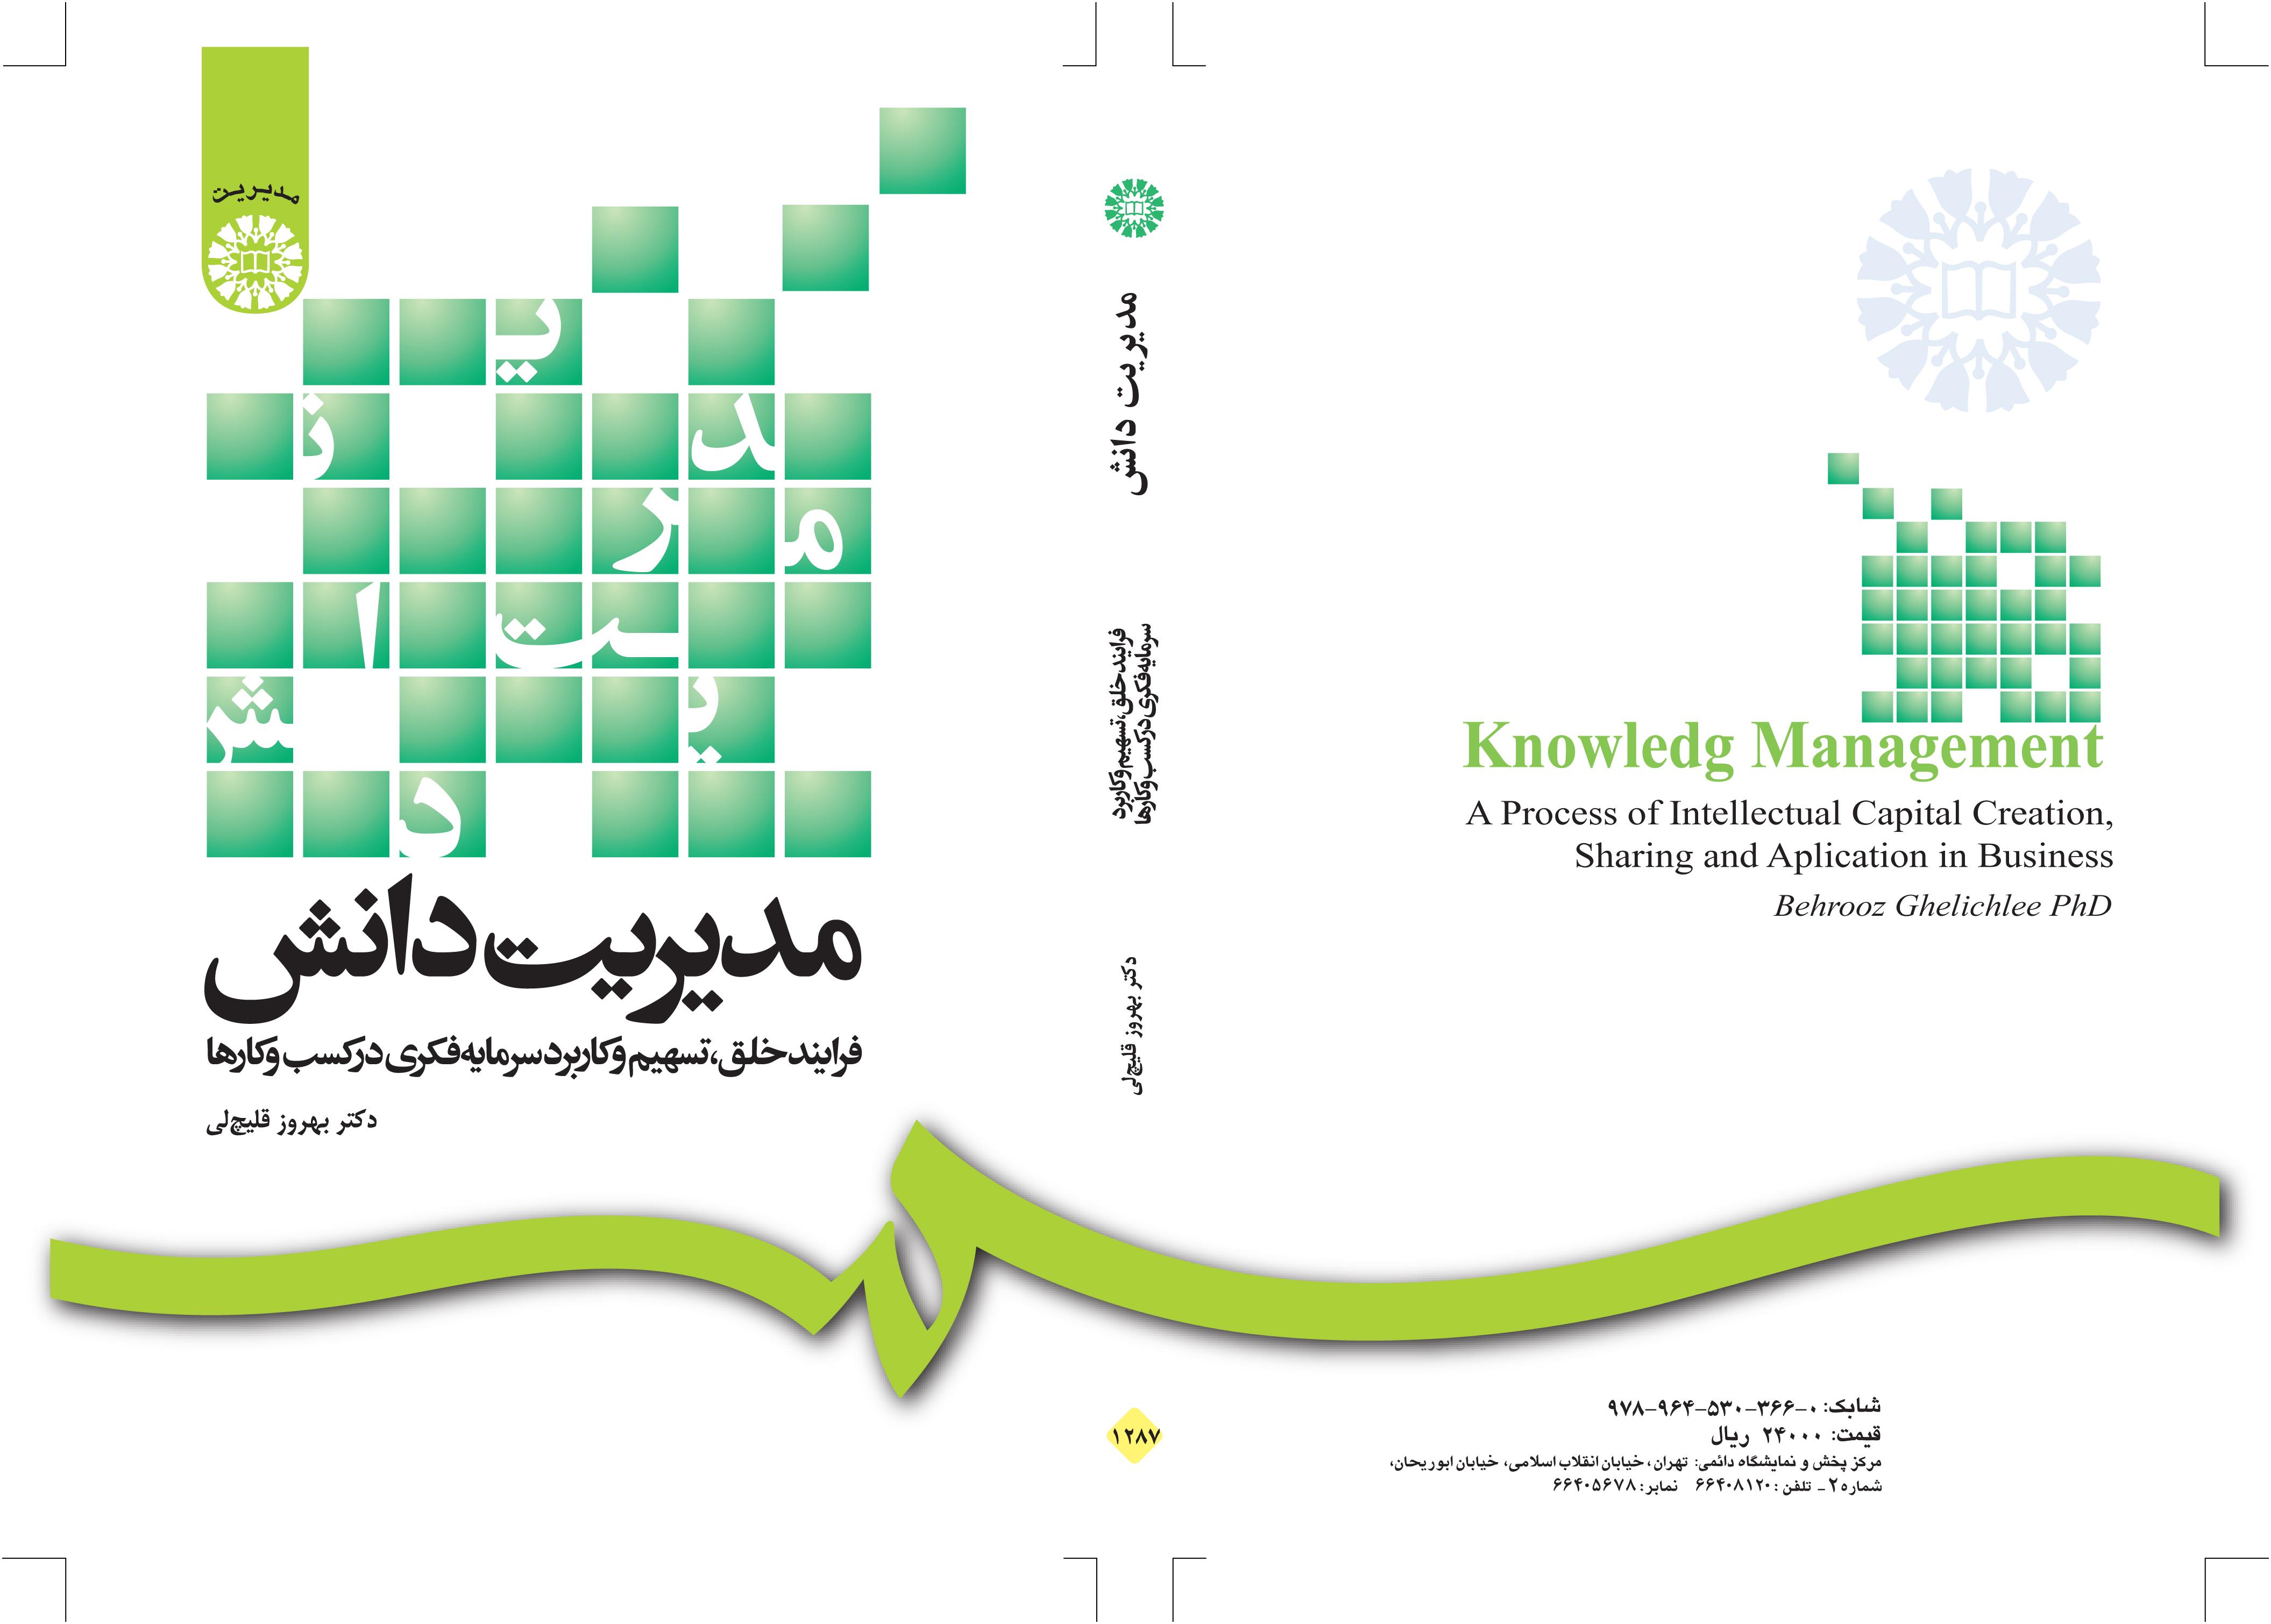 إدارة المعرفة: عملية تكوين رأس المال الفكري ومشاركته واستخدامه في الأعمال التجارية